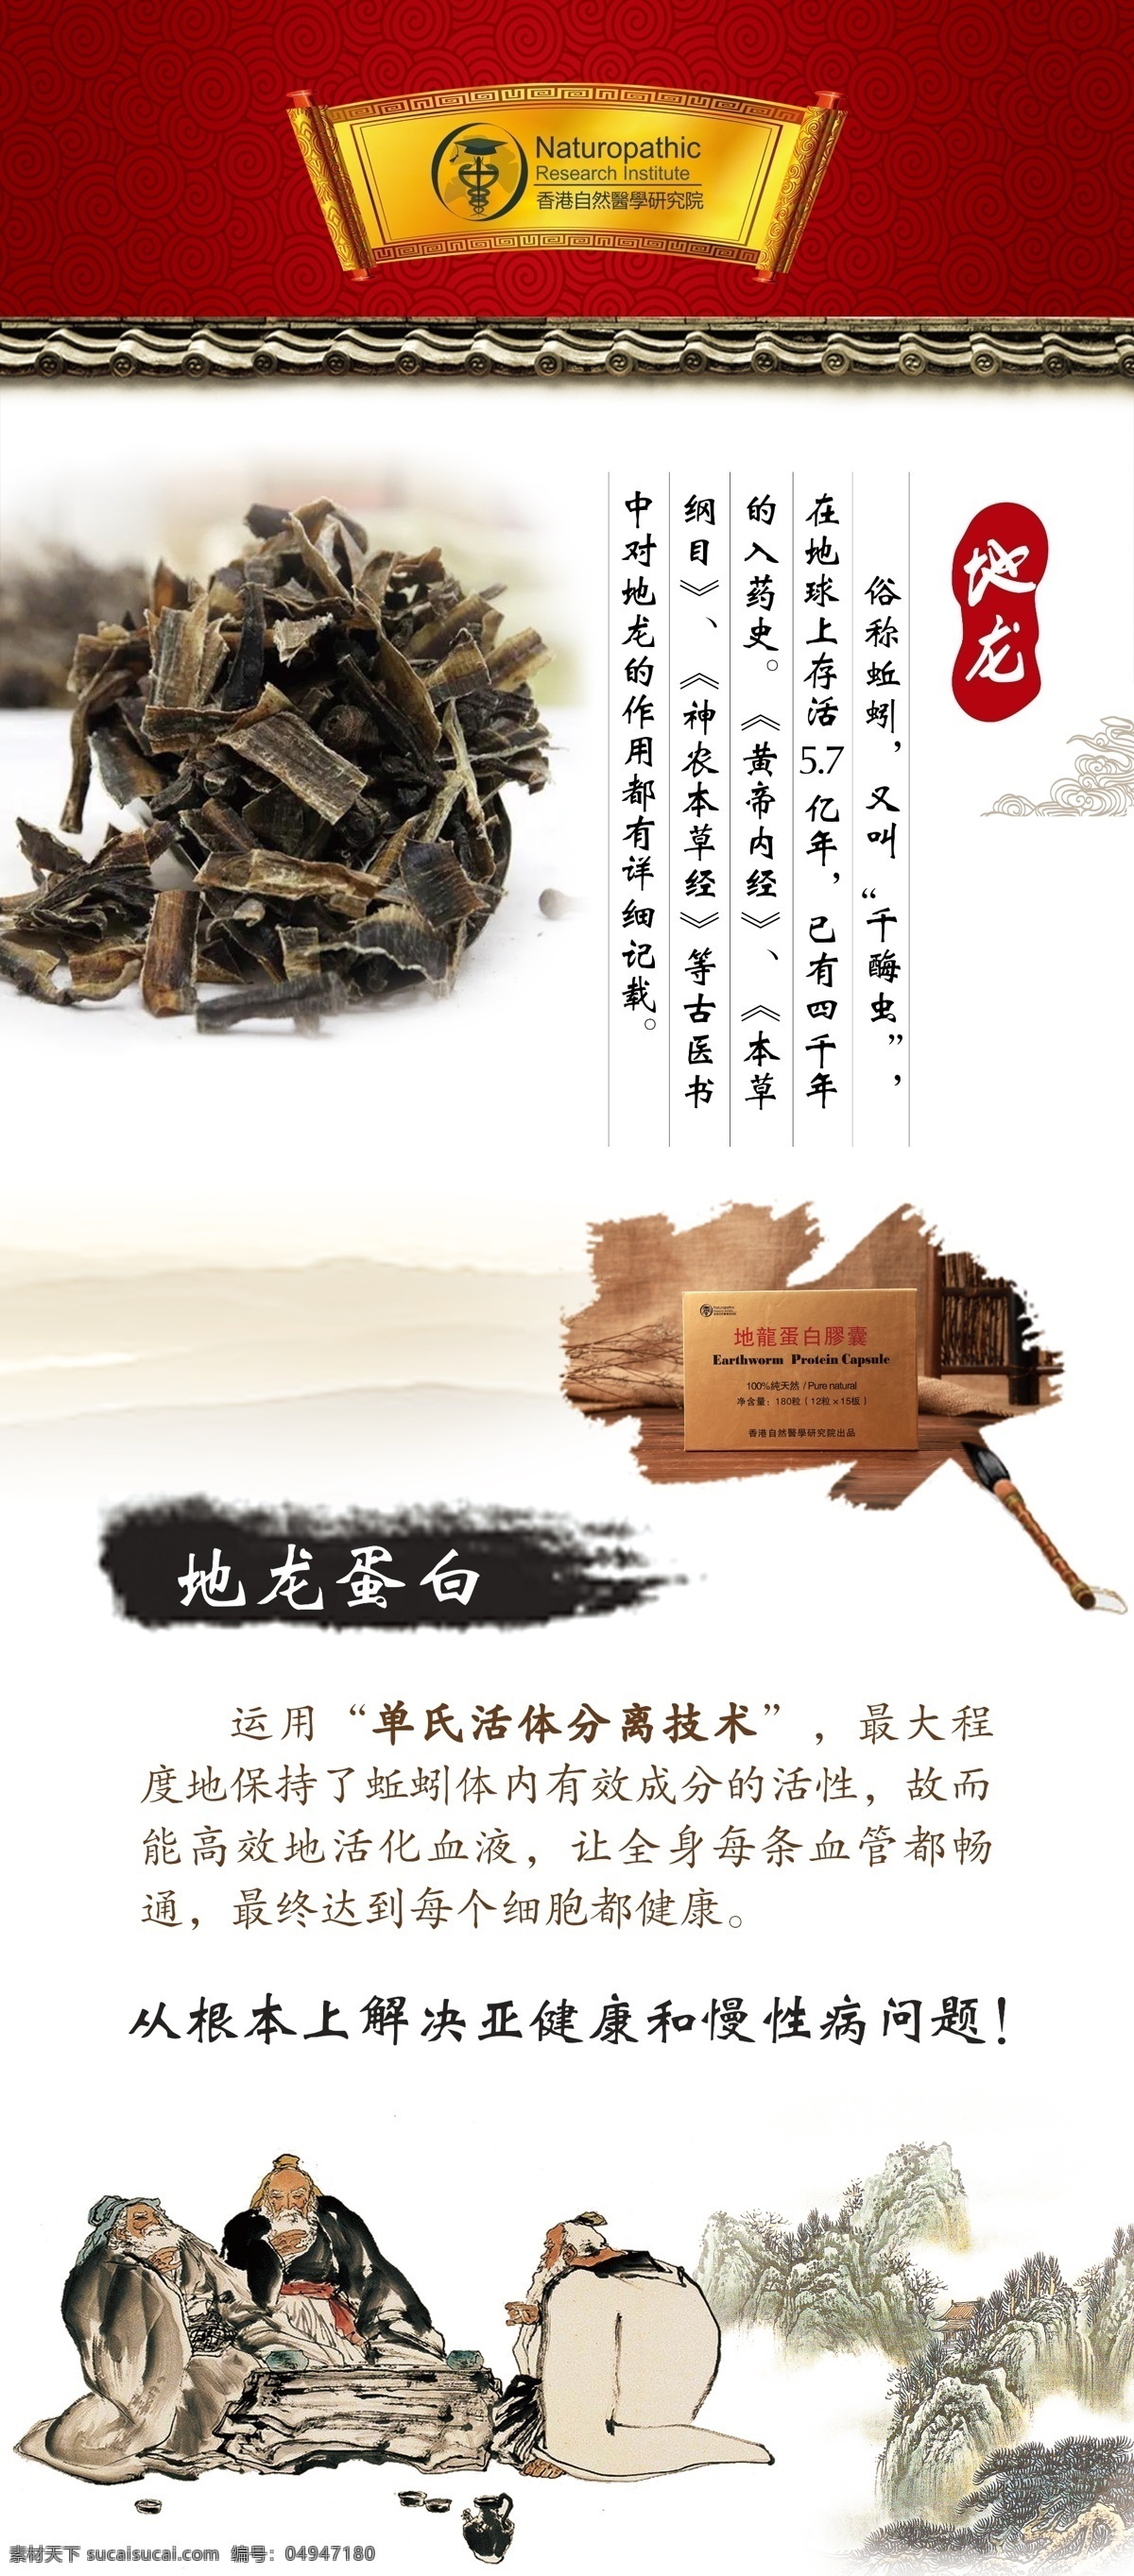 中国风展架 中国风 产品 古风 展架 传统风格